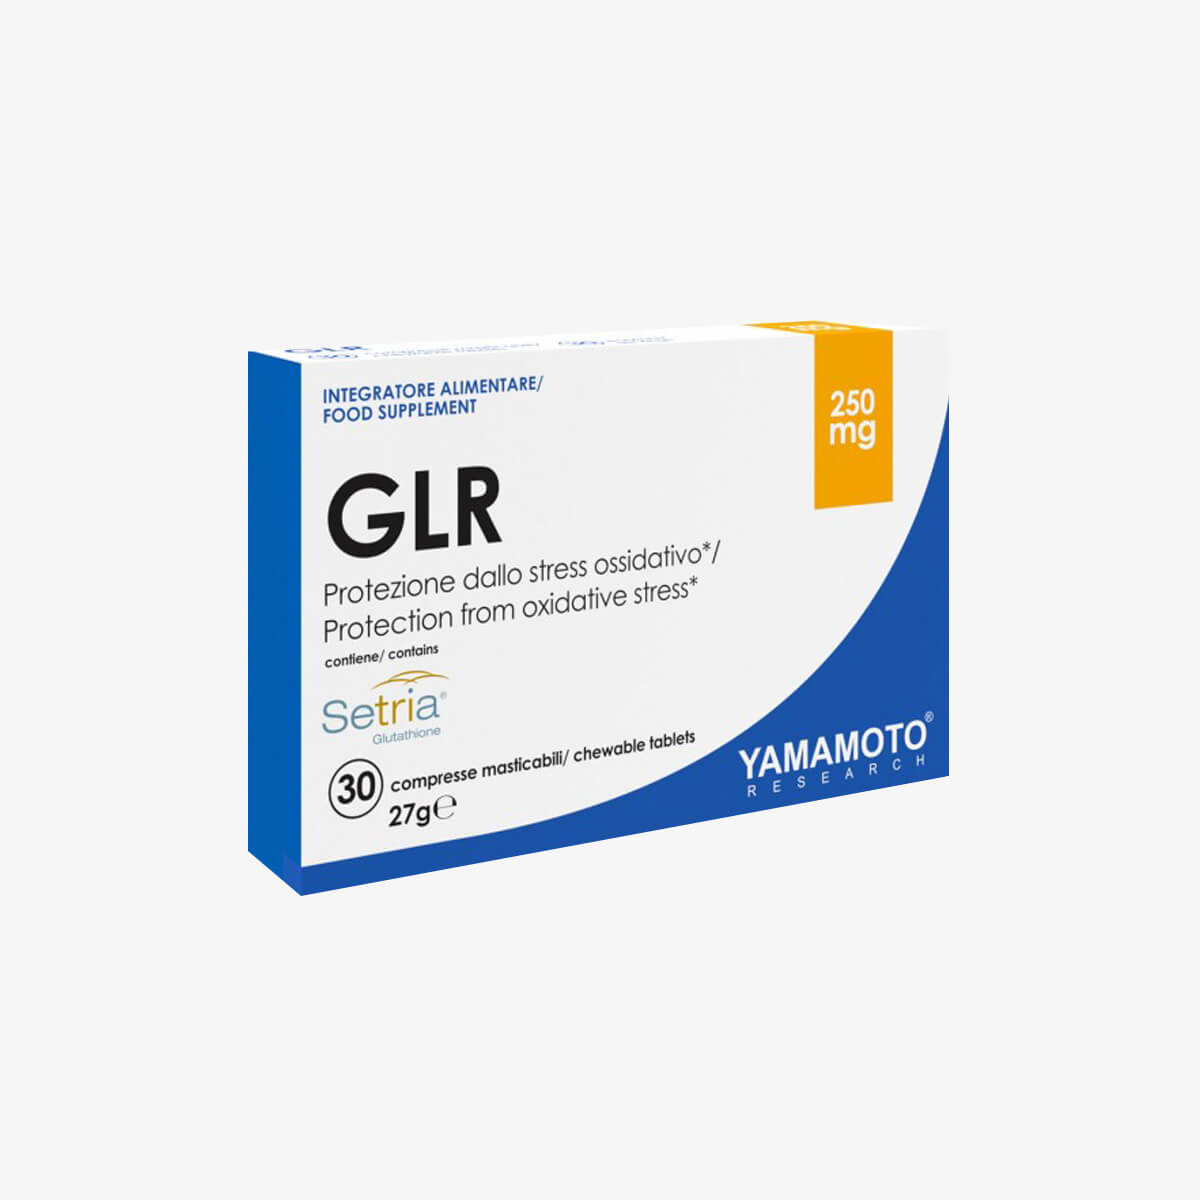 GLUTATHIONE YAMAMOTO GLR® 250MG/ANTIOXIDANT